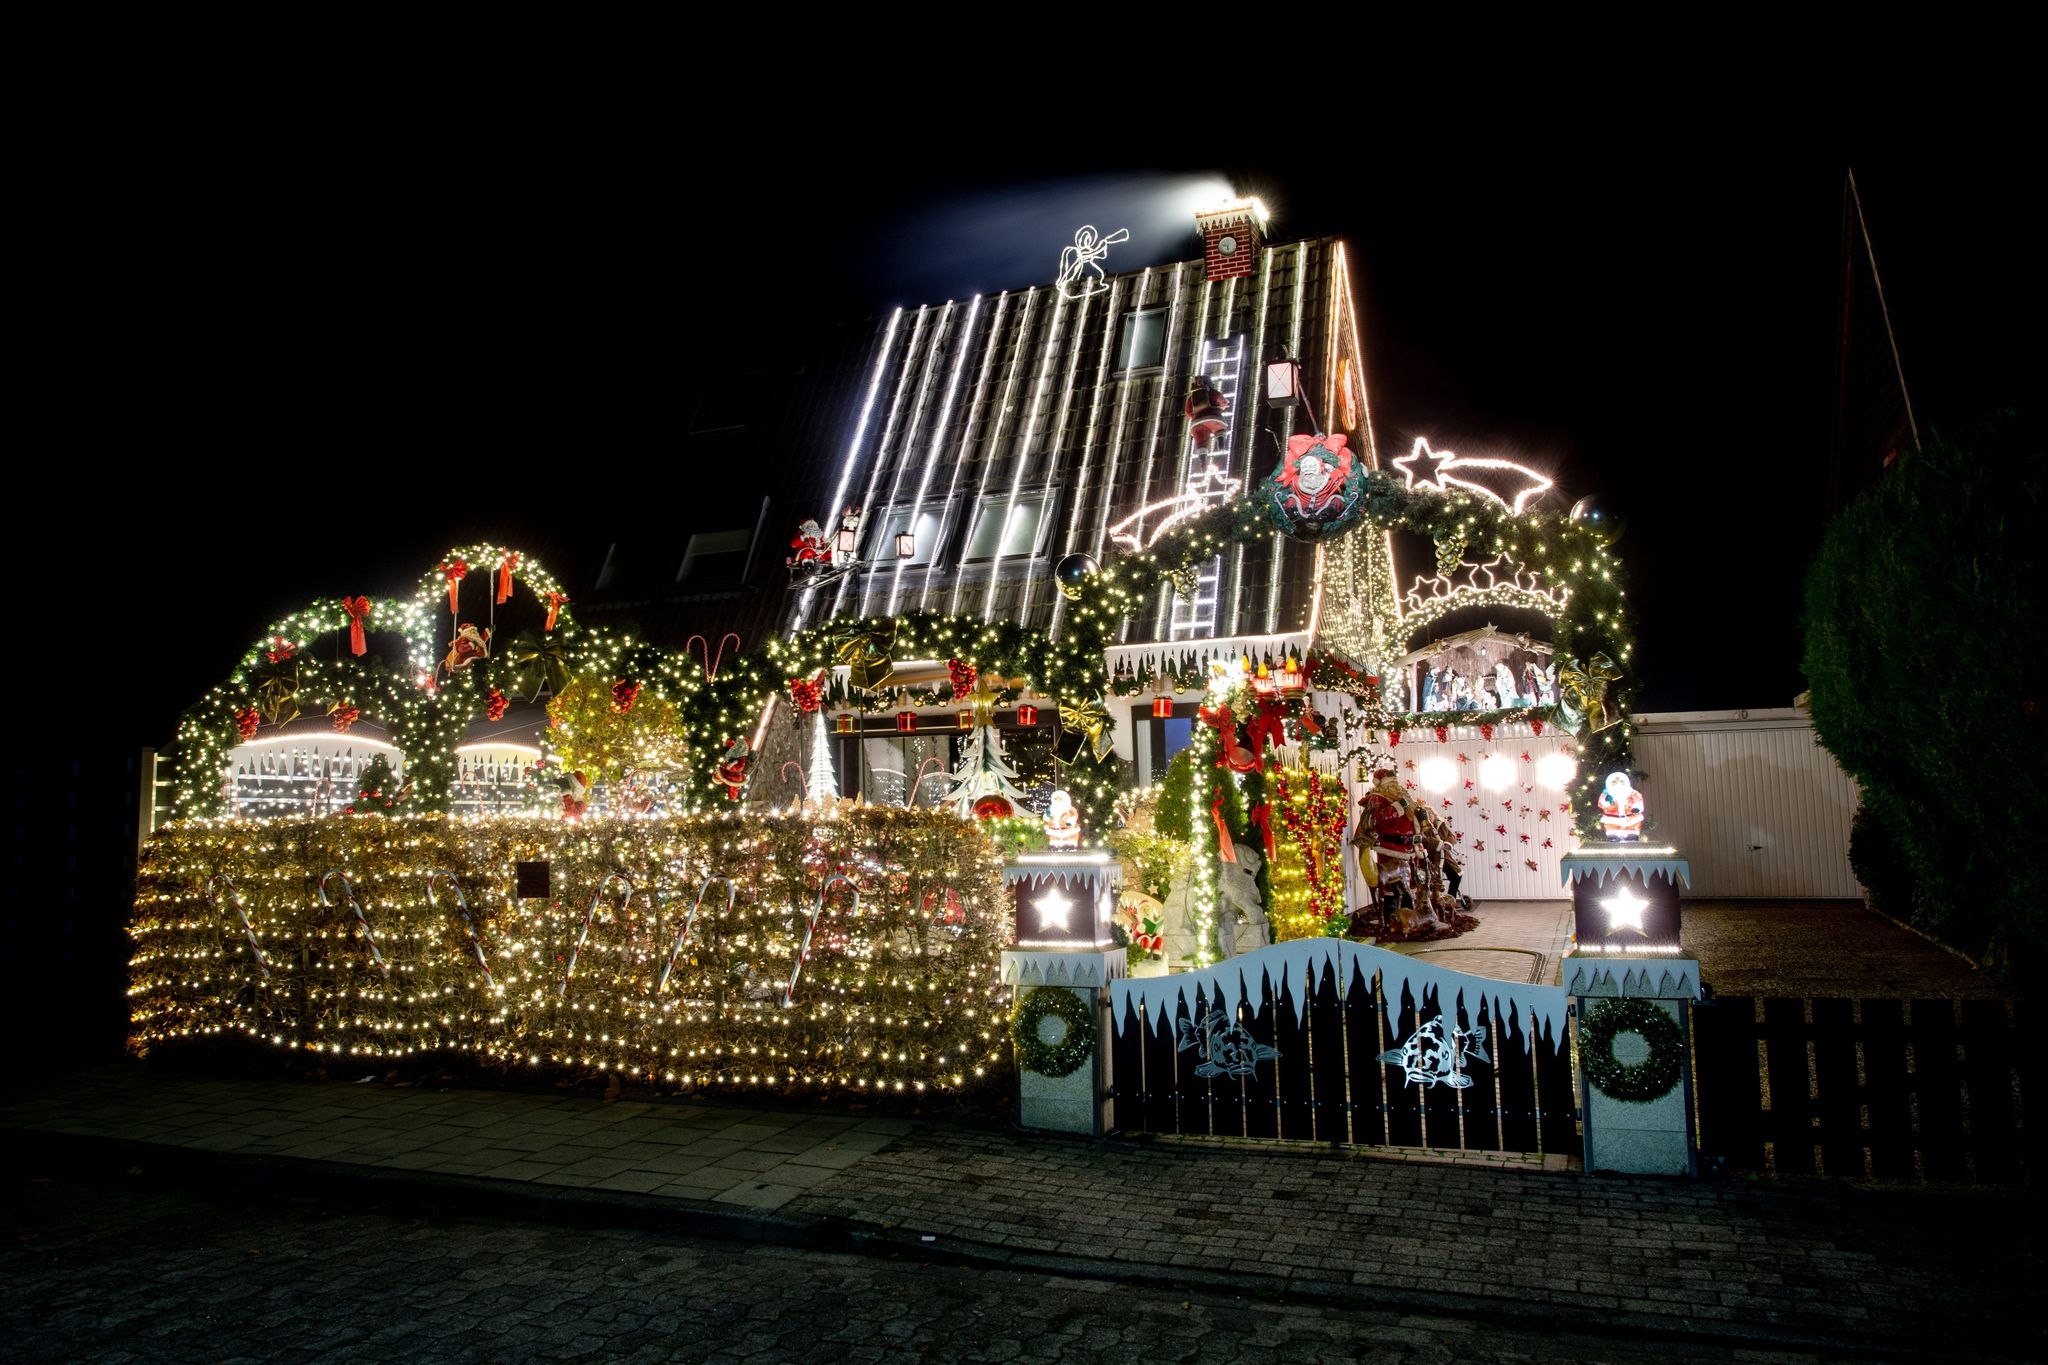 Zahlreiche Lichter erstrahlen am weihnachtlich geschmückten Haus der Familie Borchart. Vom 1. Advent bis zum Jahresende erstrahlt das Haus der Familie mit Weihnachtsdekoration und rund 60.000 Lichtern. (© Hauke-Christian Dittrich/dpa)